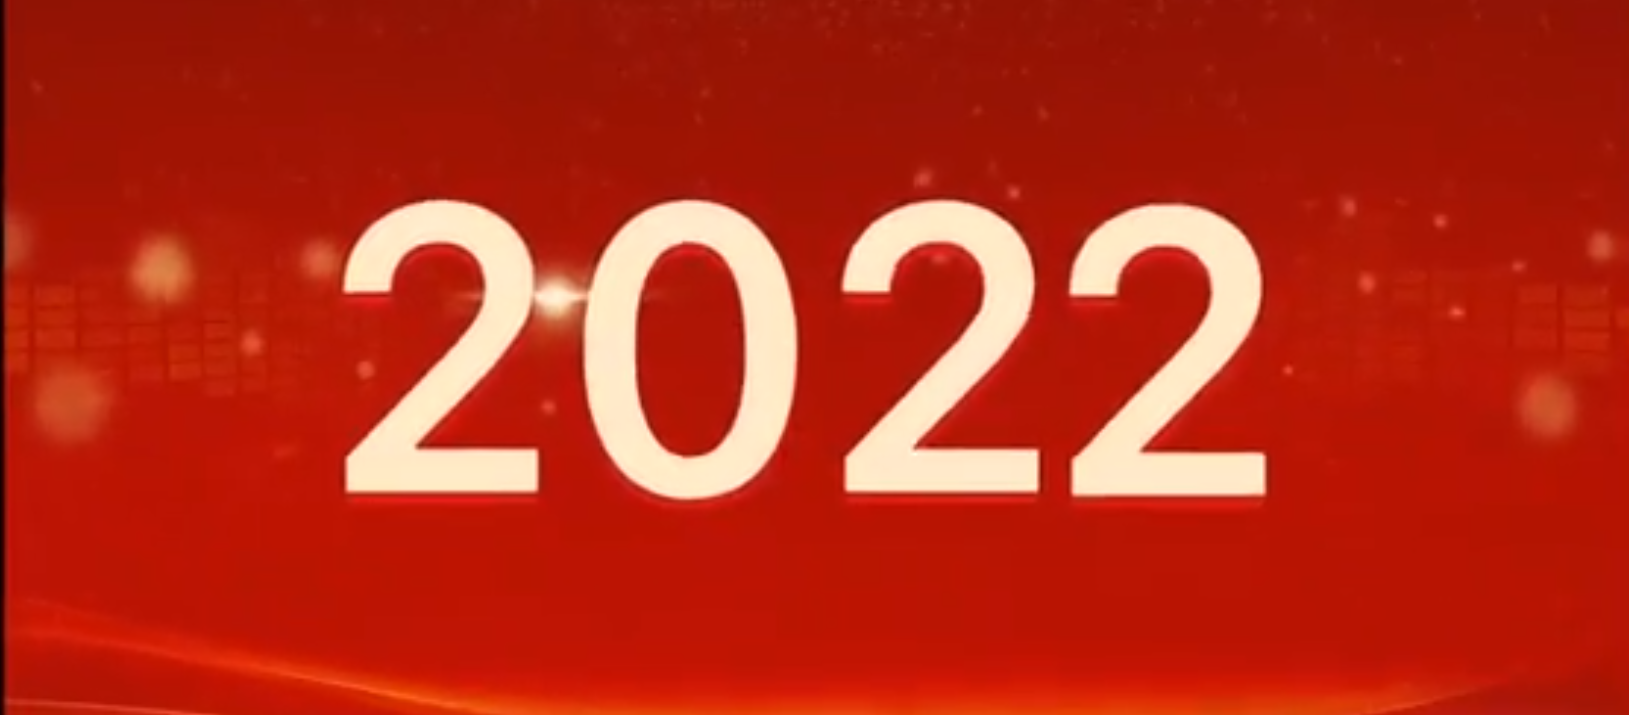 启航新征程<h3>企鹅捕鱼安卓版下载</h3>，扬帆再出发！潞安化机集团2021年度大事记